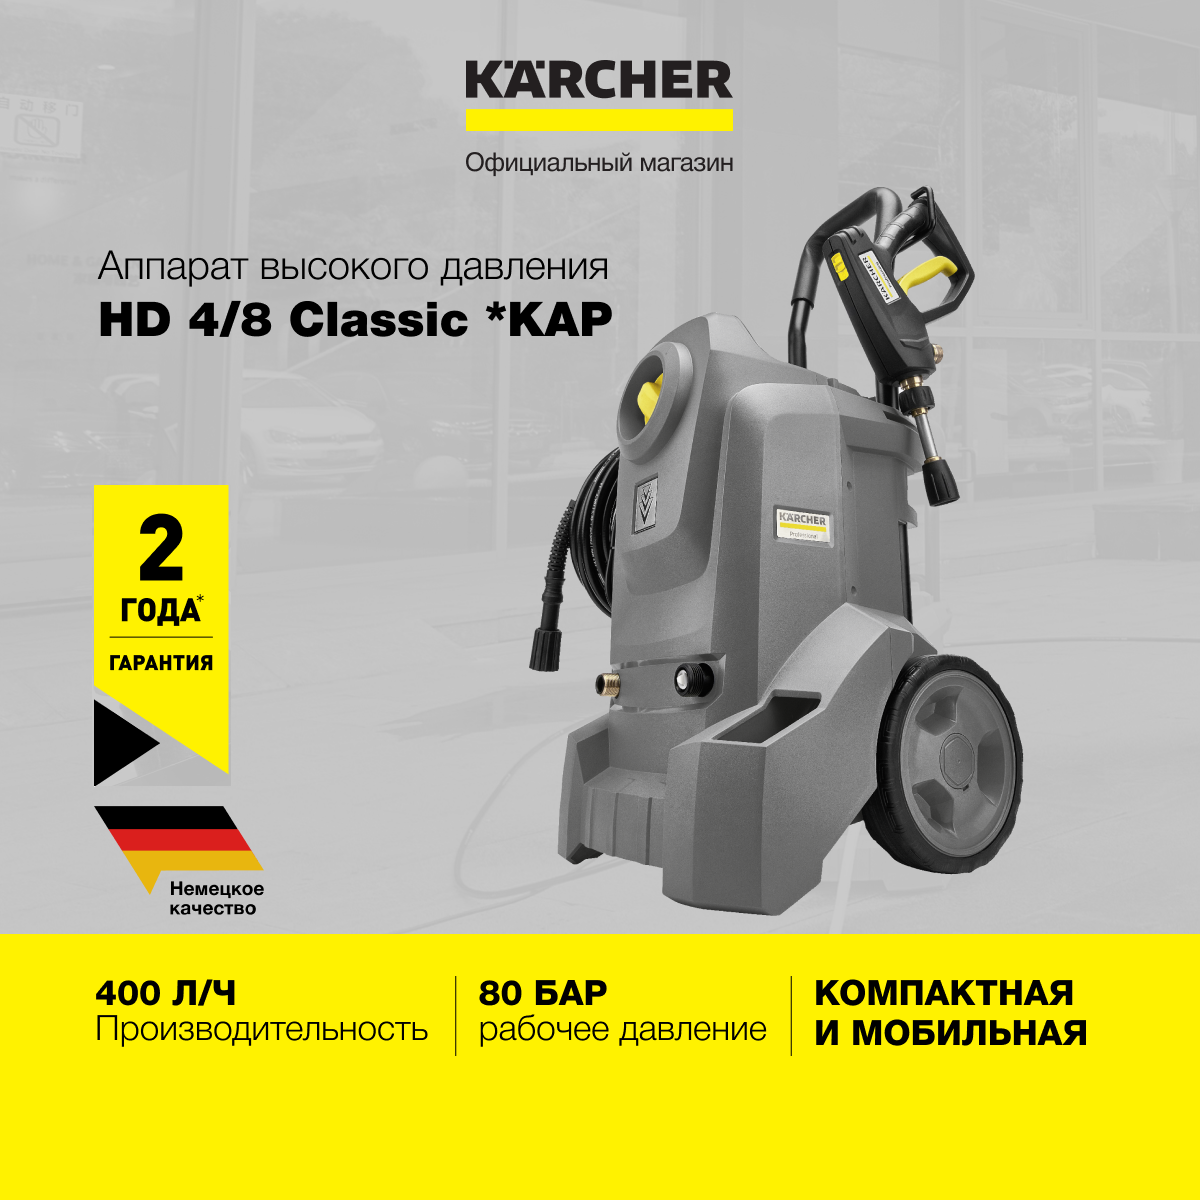 Аппарат высокого давления Karcher HD 4/8 Classic 1.520-974.0, 400 л/ч, рабочее давление 80 бар, с выдвижной ручкой для перемещения и прочными колесами